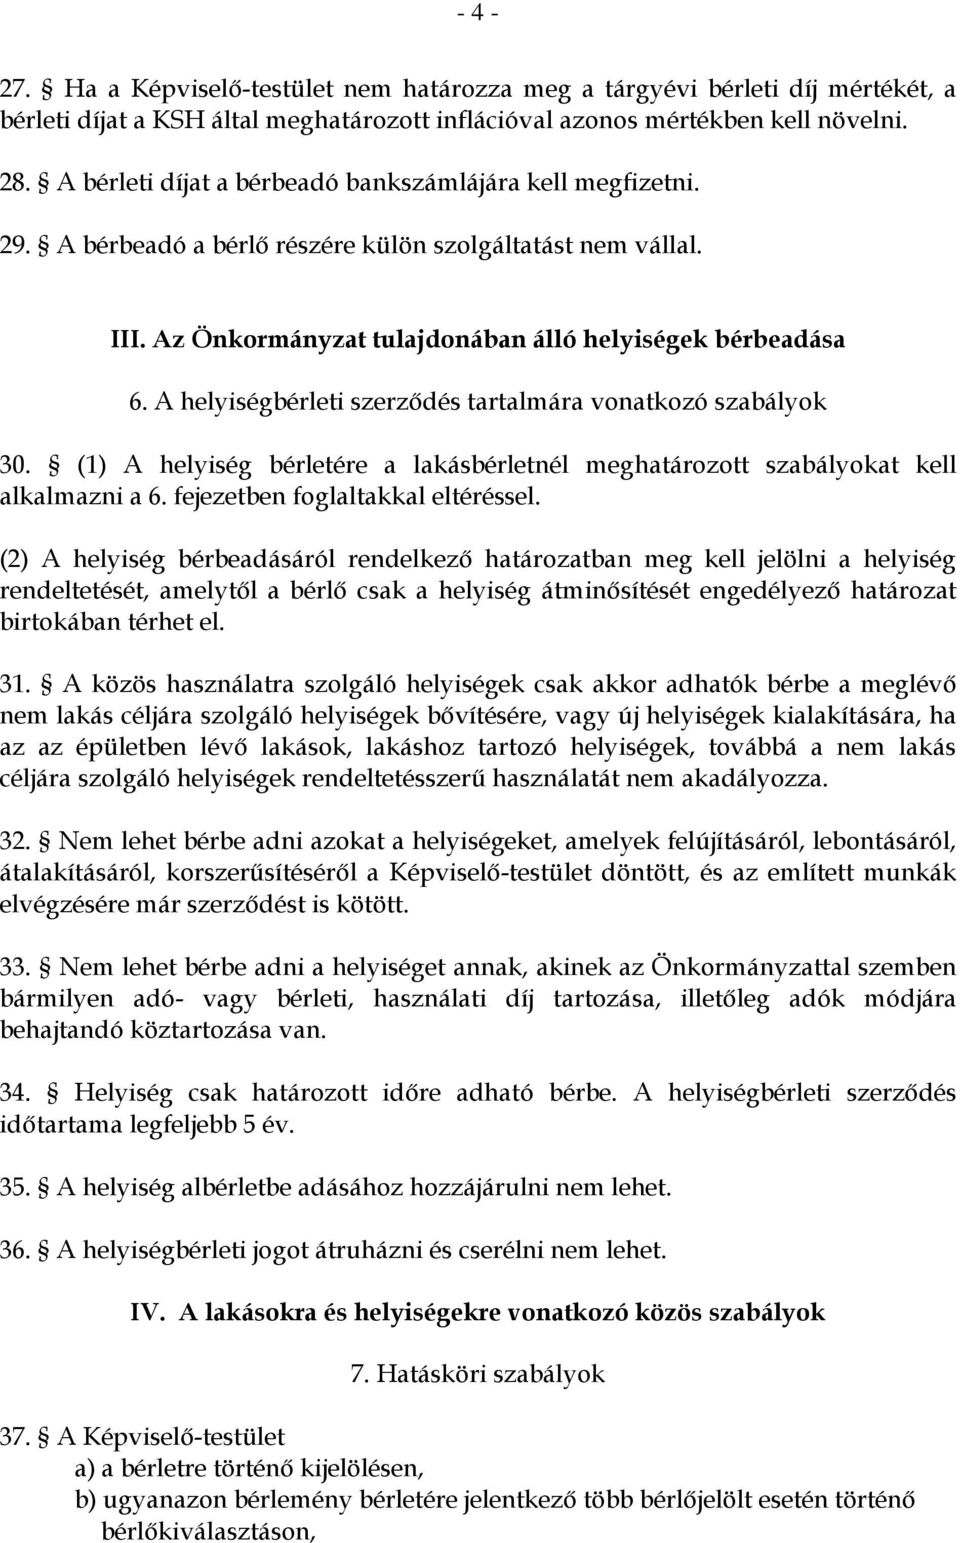 A helyiségbérleti szerződés tartalmára vonatkozó szabályok 30. (1) A helyiség bérletére a lakásbérletnél meghatározott szabályokat kell alkalmazni a 6. fejezetben foglaltakkal eltéréssel.